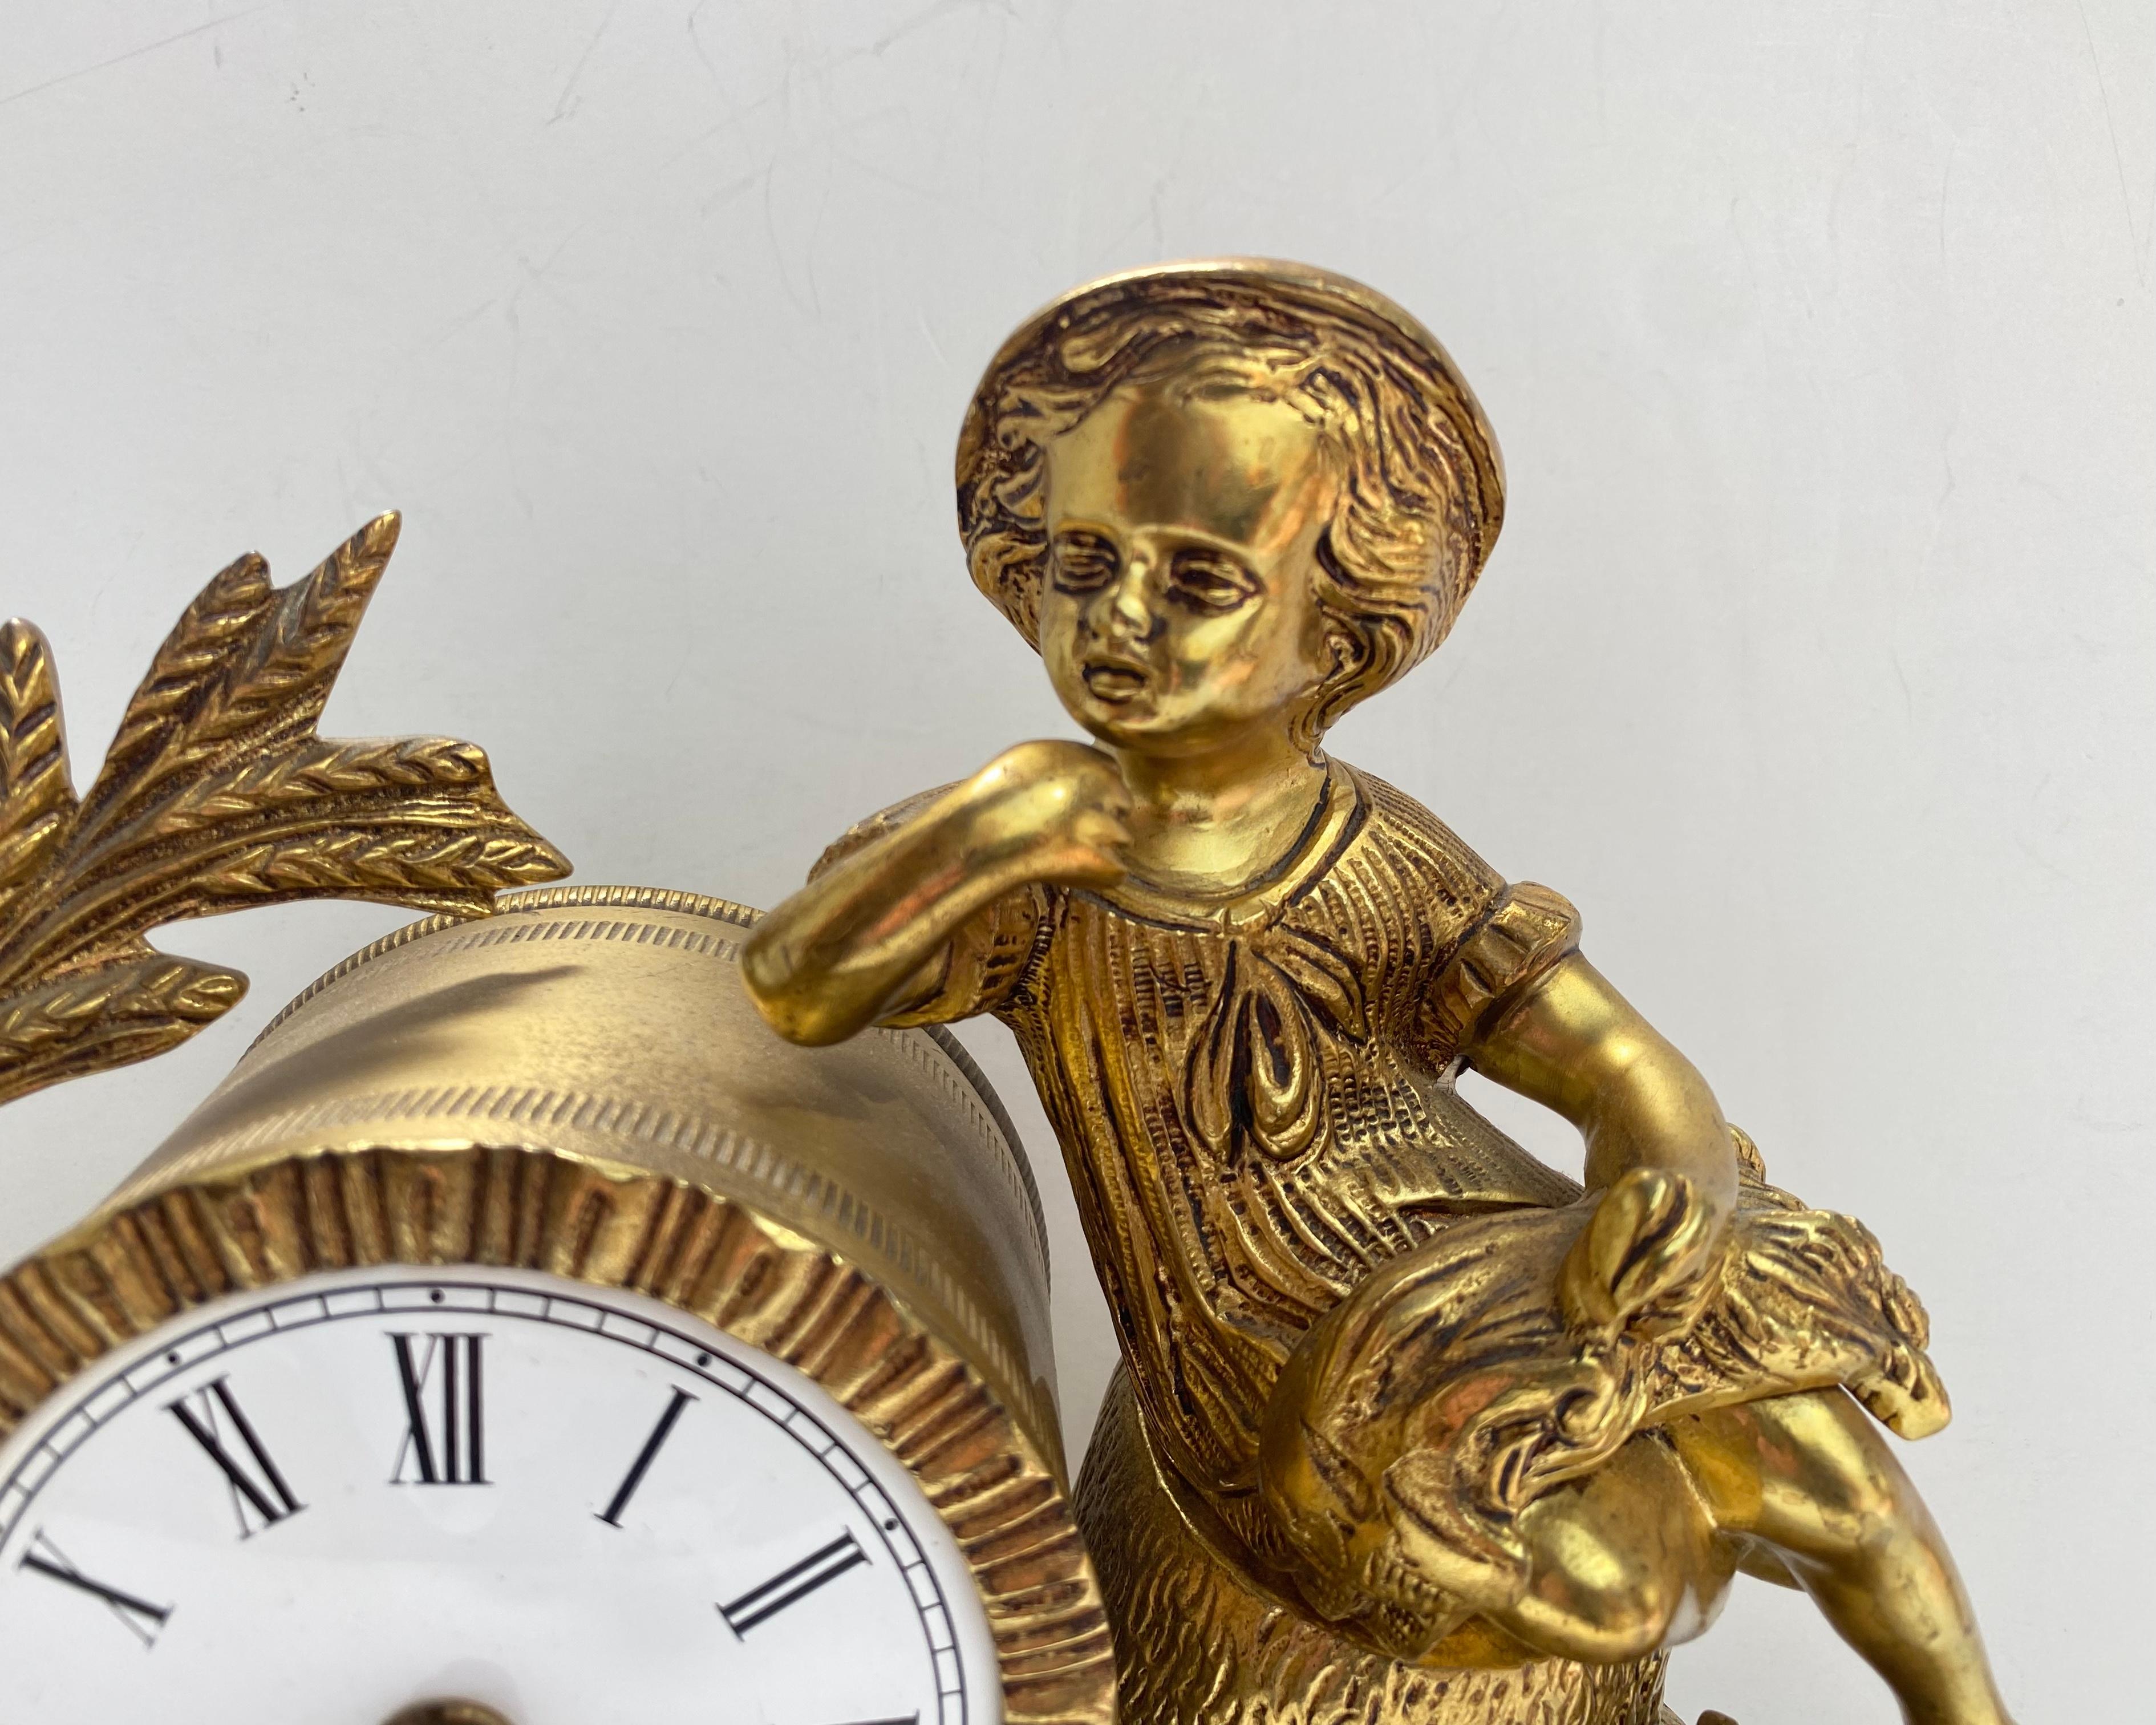 Figurale Kaminuhr aus vergoldetem Zinn im viktorianischen Stil aus der Mitte des 20. Jahrhunderts.

Mit einer gut gegossenen Bronzefigur eines Jungen/Kindes in viktorianischer Kleidung, Weizengarben und Sense, einem stark verzierten Design im